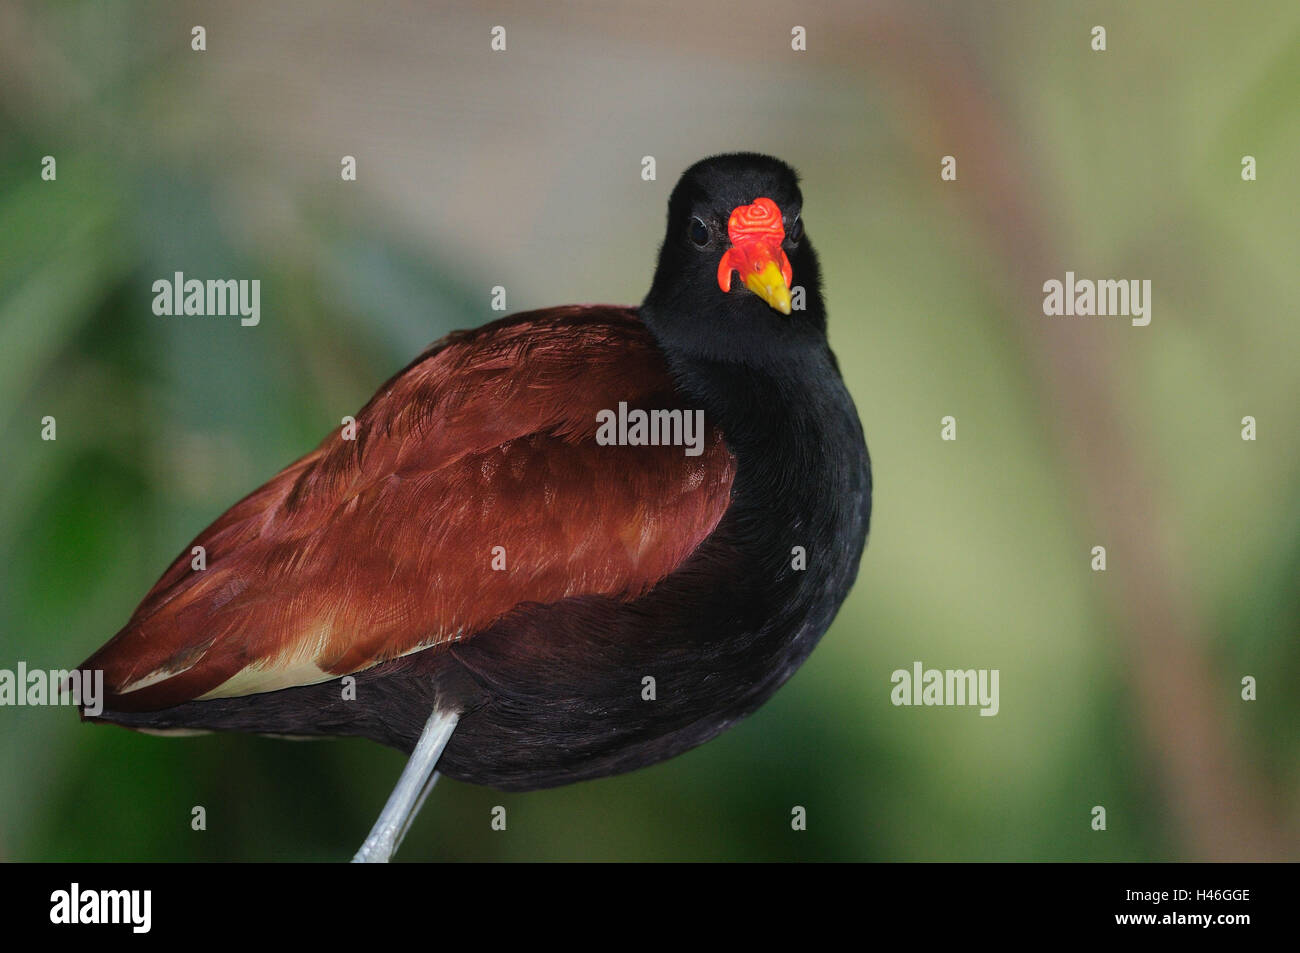 Jacana Jacana, Ständer, Shout, rote Stirn Blatt Hühner, Seitenansicht, Blick in die Kamera Stockfoto